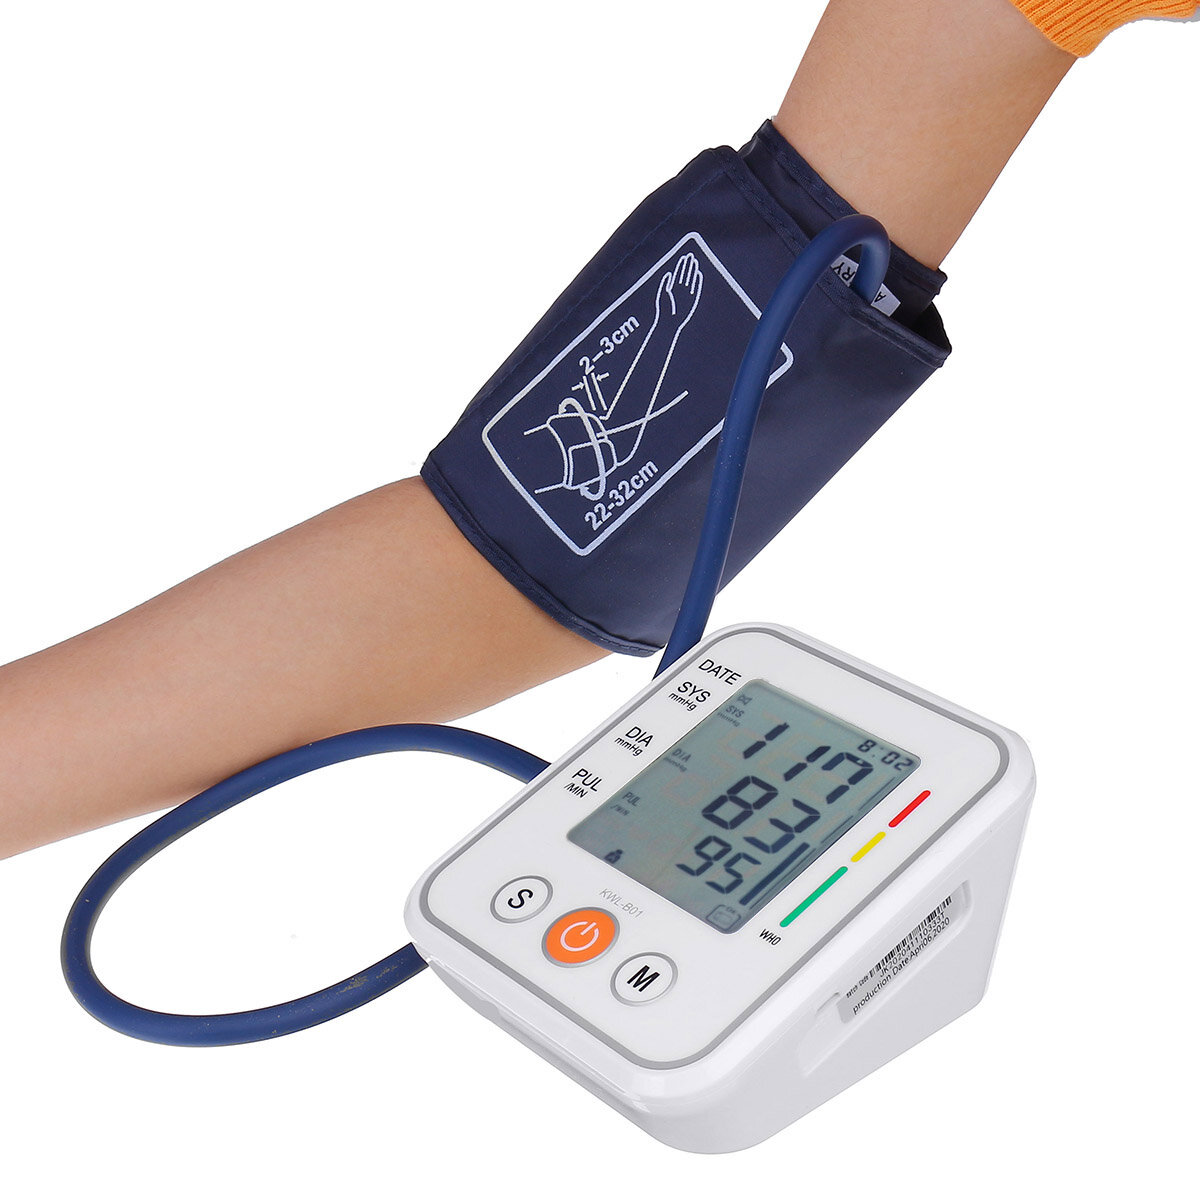 

Метр кровяного давления Бытовая рука Монитор Прибор для измерения кровяного давления Электронный сфигмоманометр